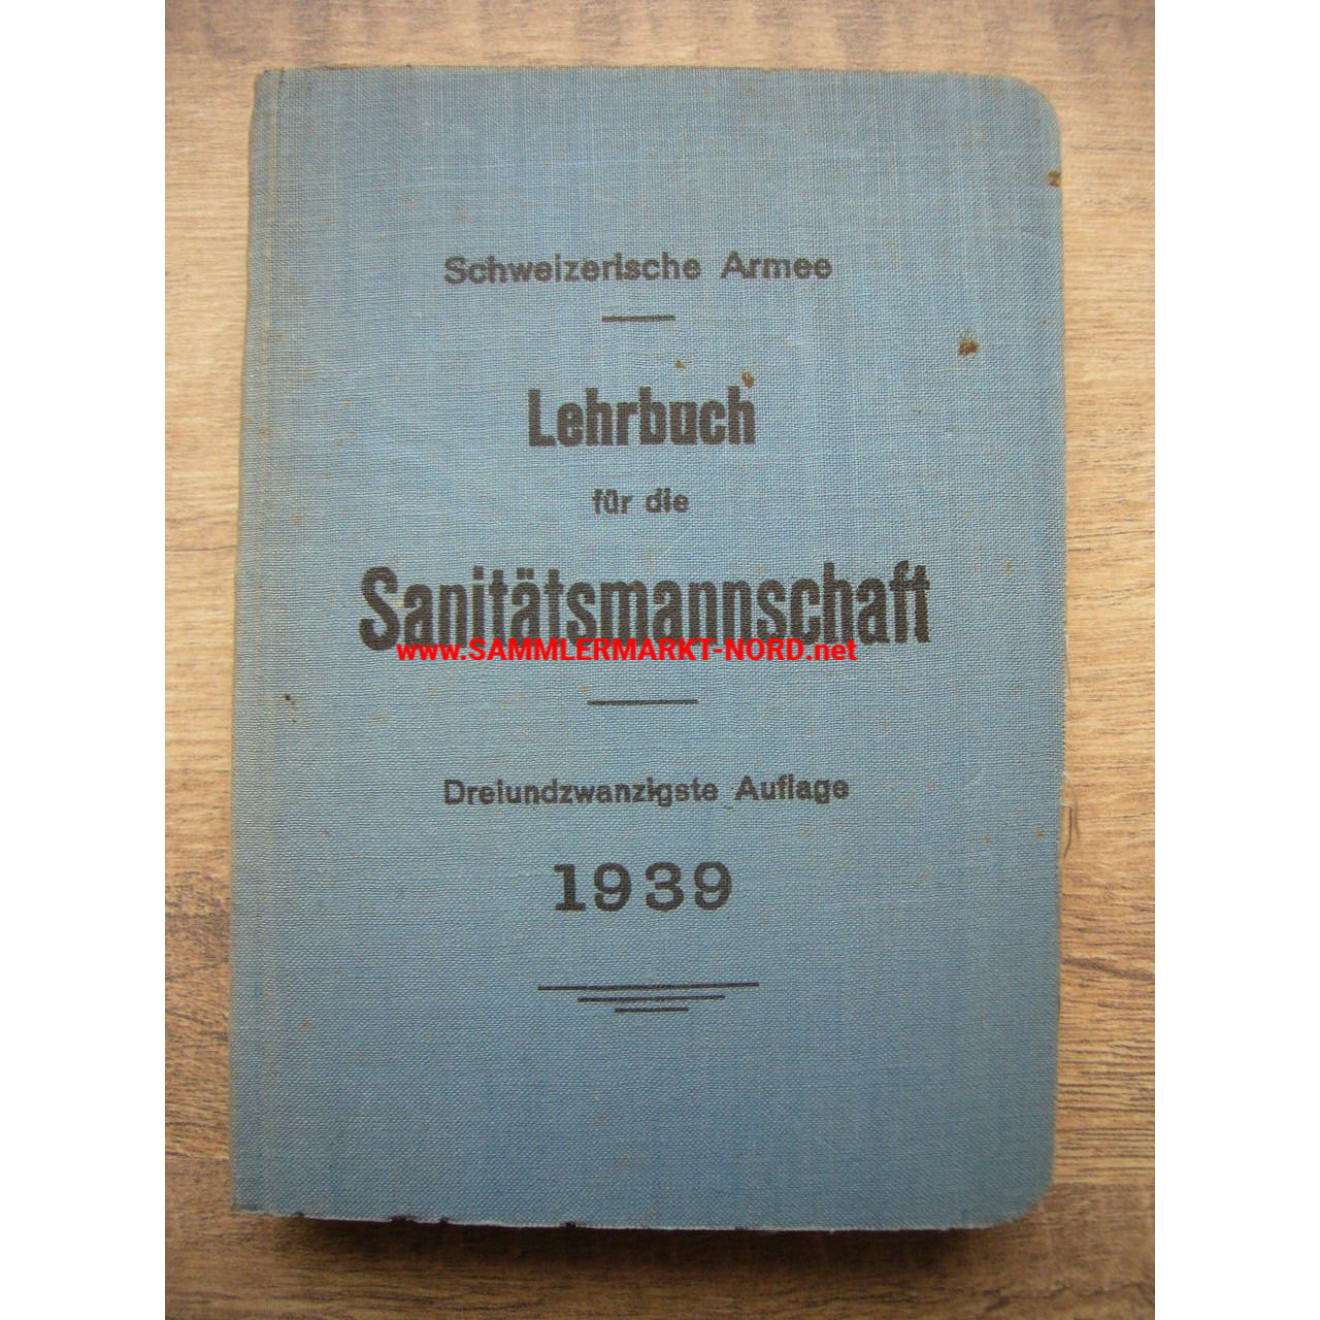 Schweizer Armee - Lehrbuch für die Sanitätsmannschaft 1939